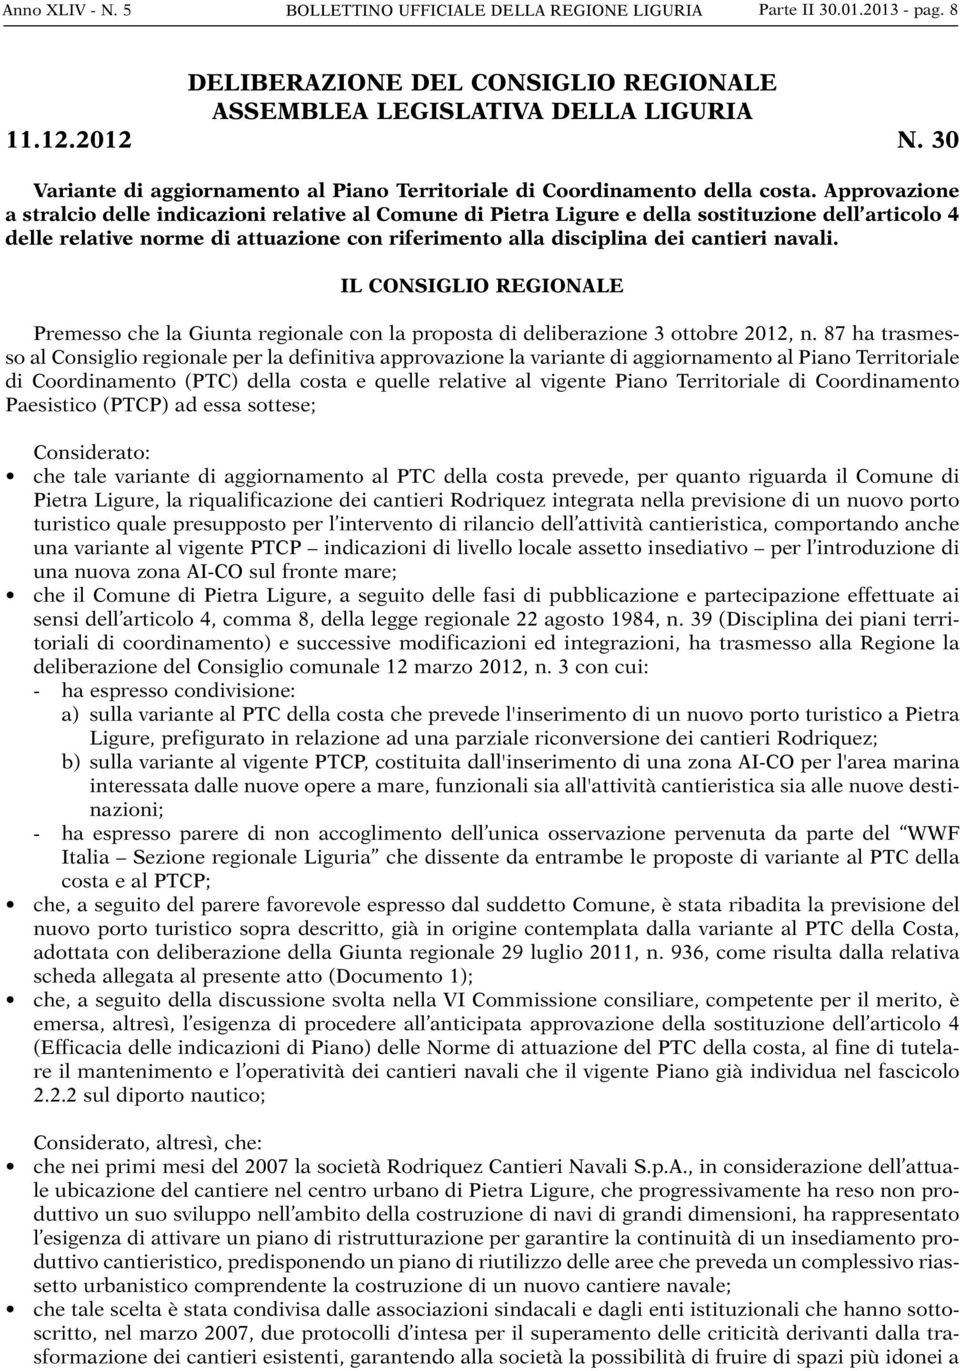 Approvazione a stralcio delle indicazioni relative al Comune di Pietra Ligure e della sostituzione dell articolo 4 delle relative norme di attuazione con riferimento alla disciplina dei cantieri